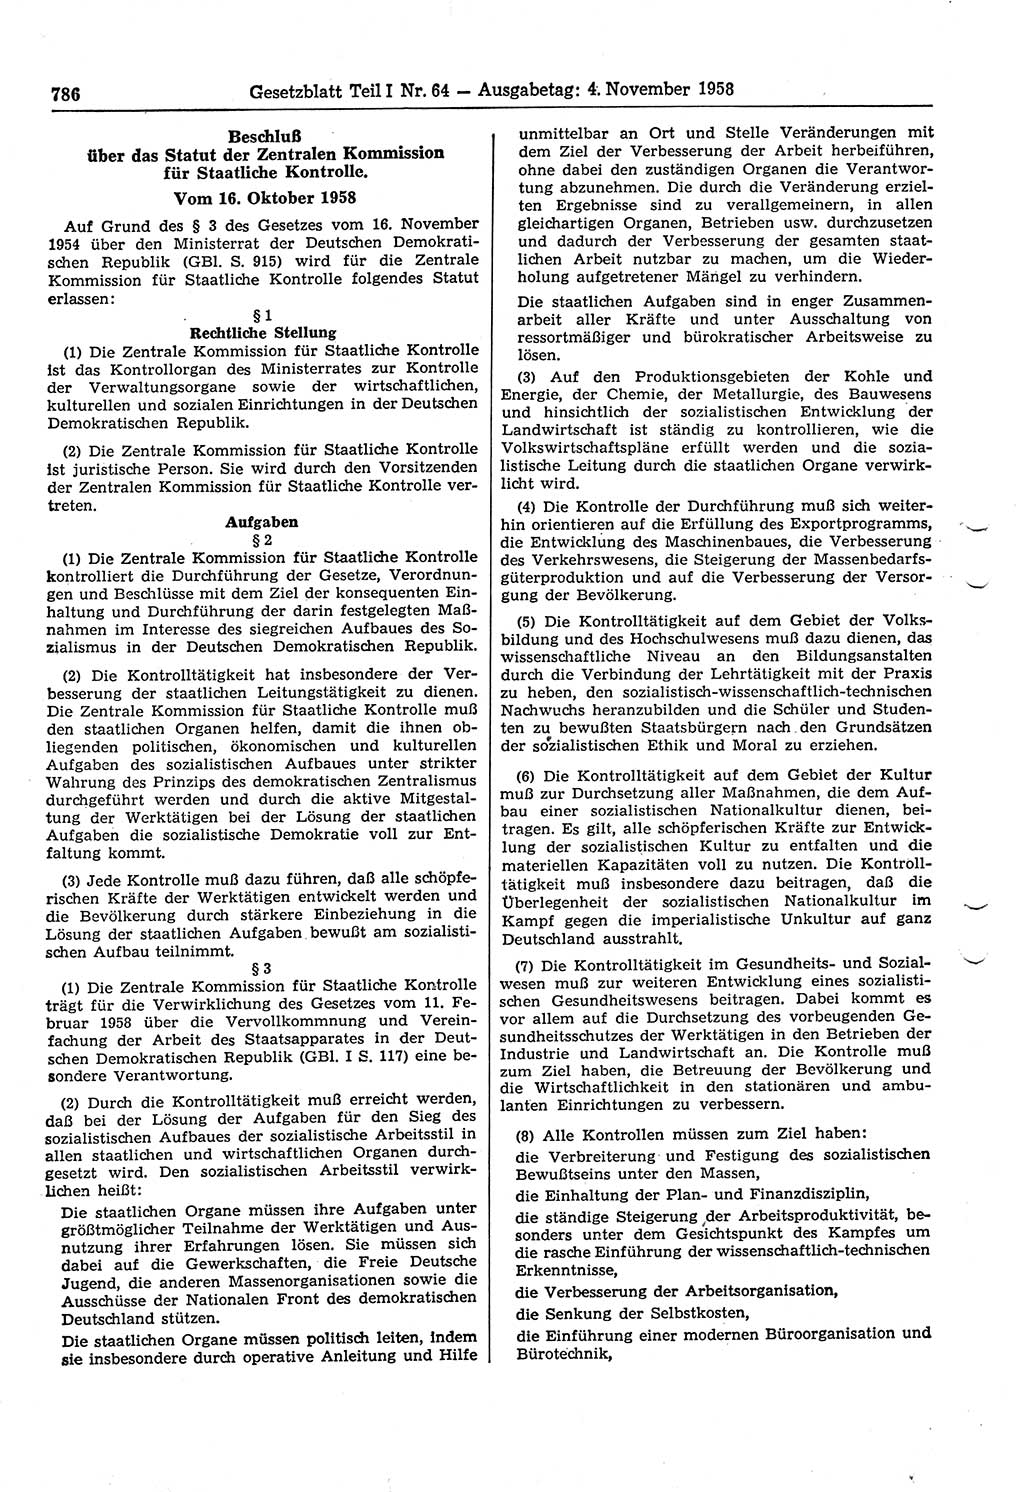 Gesetzblatt (GBl.) der Deutschen Demokratischen Republik (DDR) Teil Ⅰ 1958, Seite 786 (GBl. DDR Ⅰ 1958, S. 786)